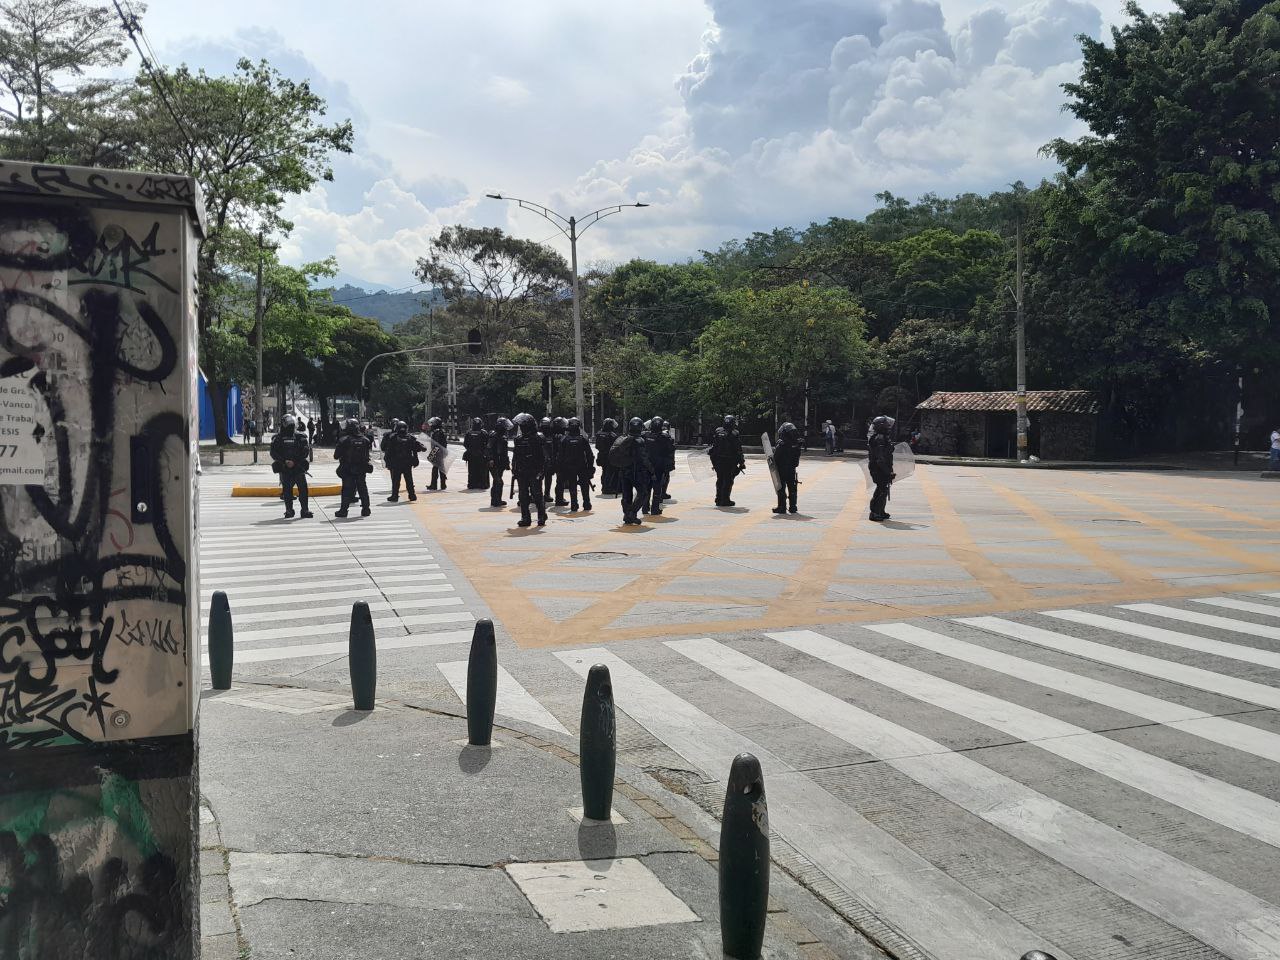 Cuando la Policía trató de controlar la situación, los manifestantes atacaron a los uniformados con material inflamable. @DenunciasAntio2/Twitter